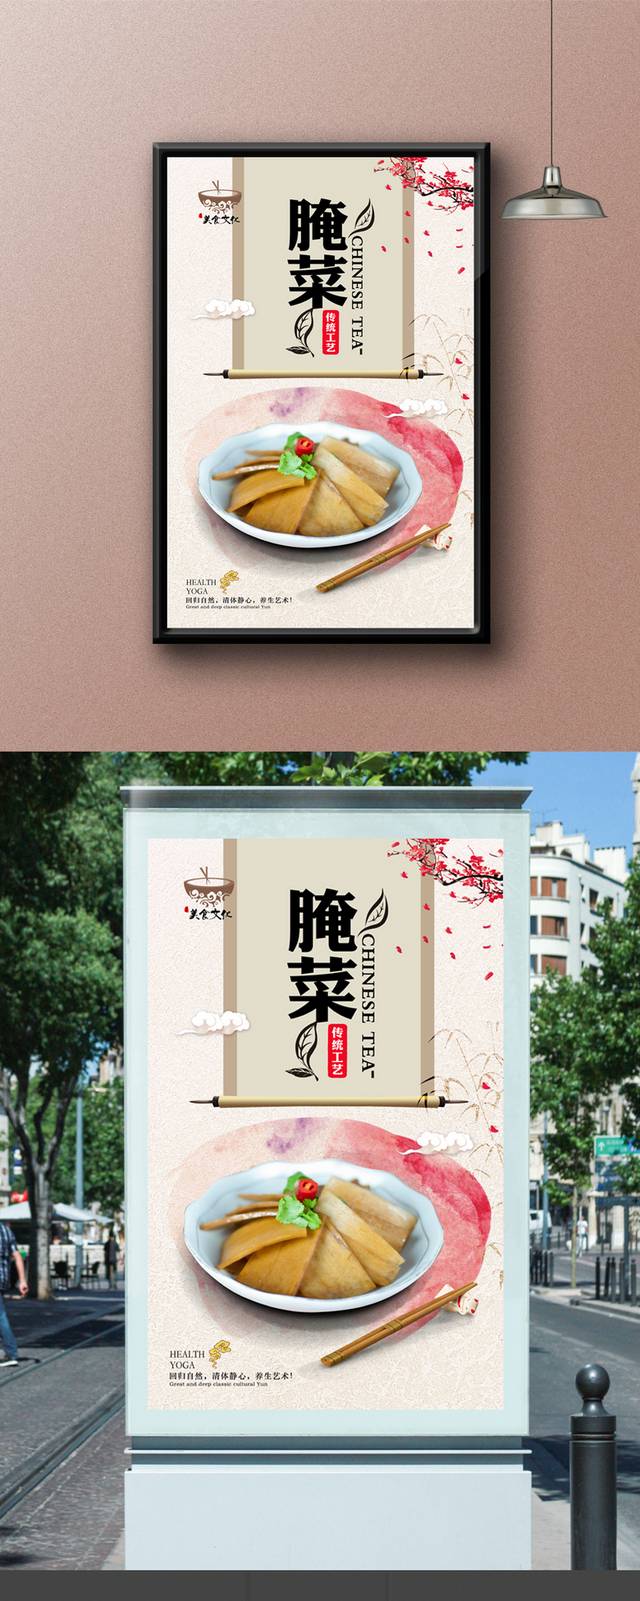 中国风咸菜宣传海报设计